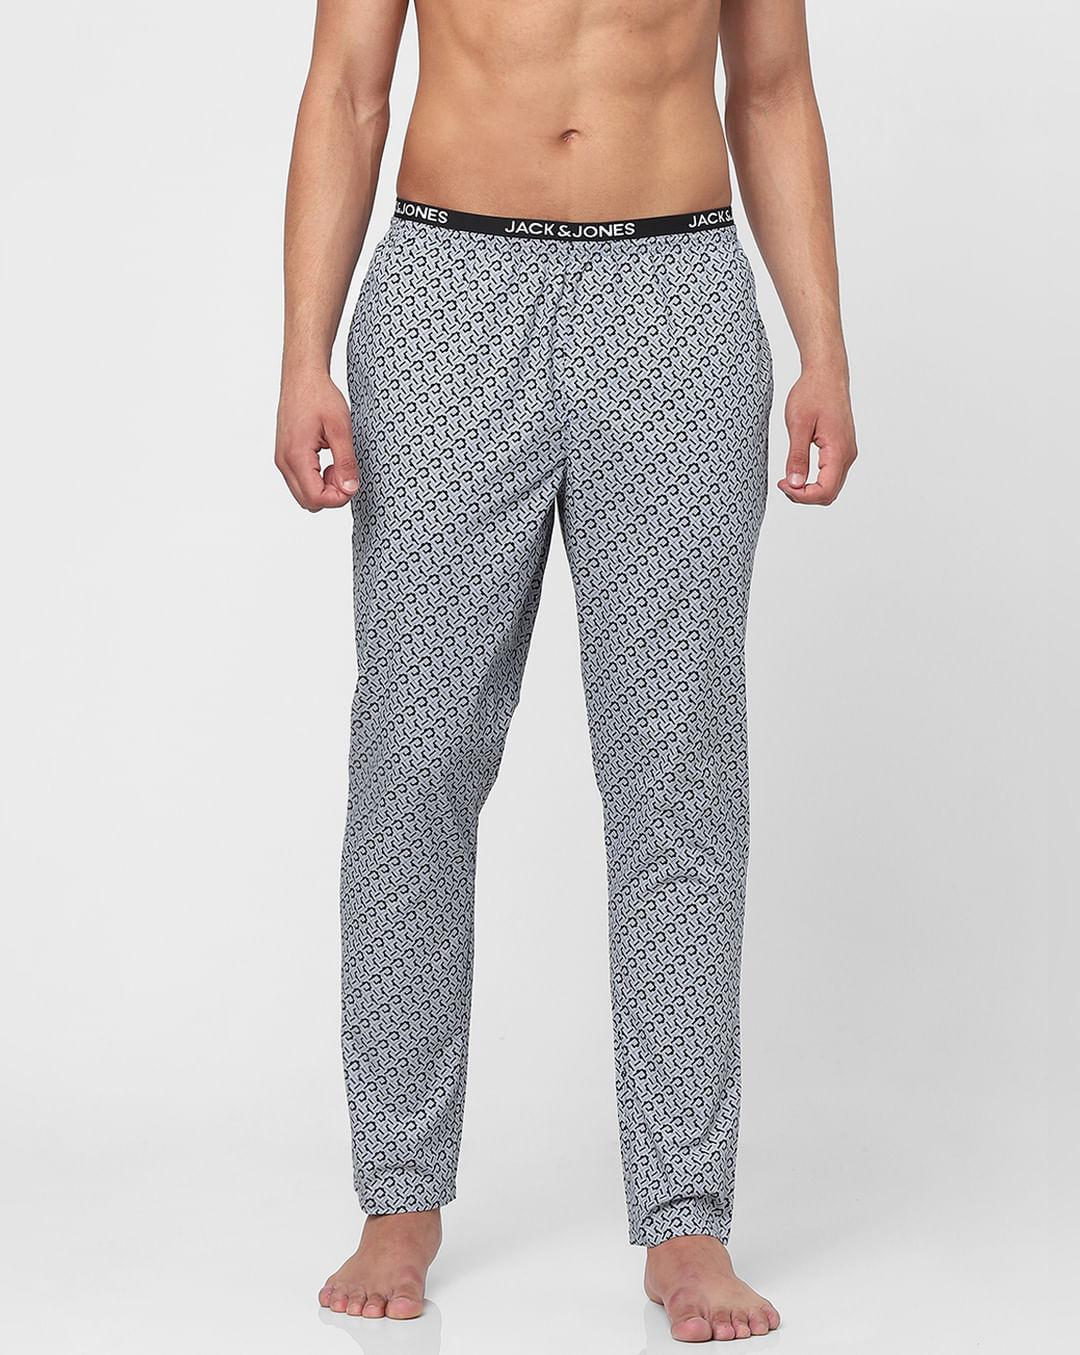 grey printed camo pyjamas